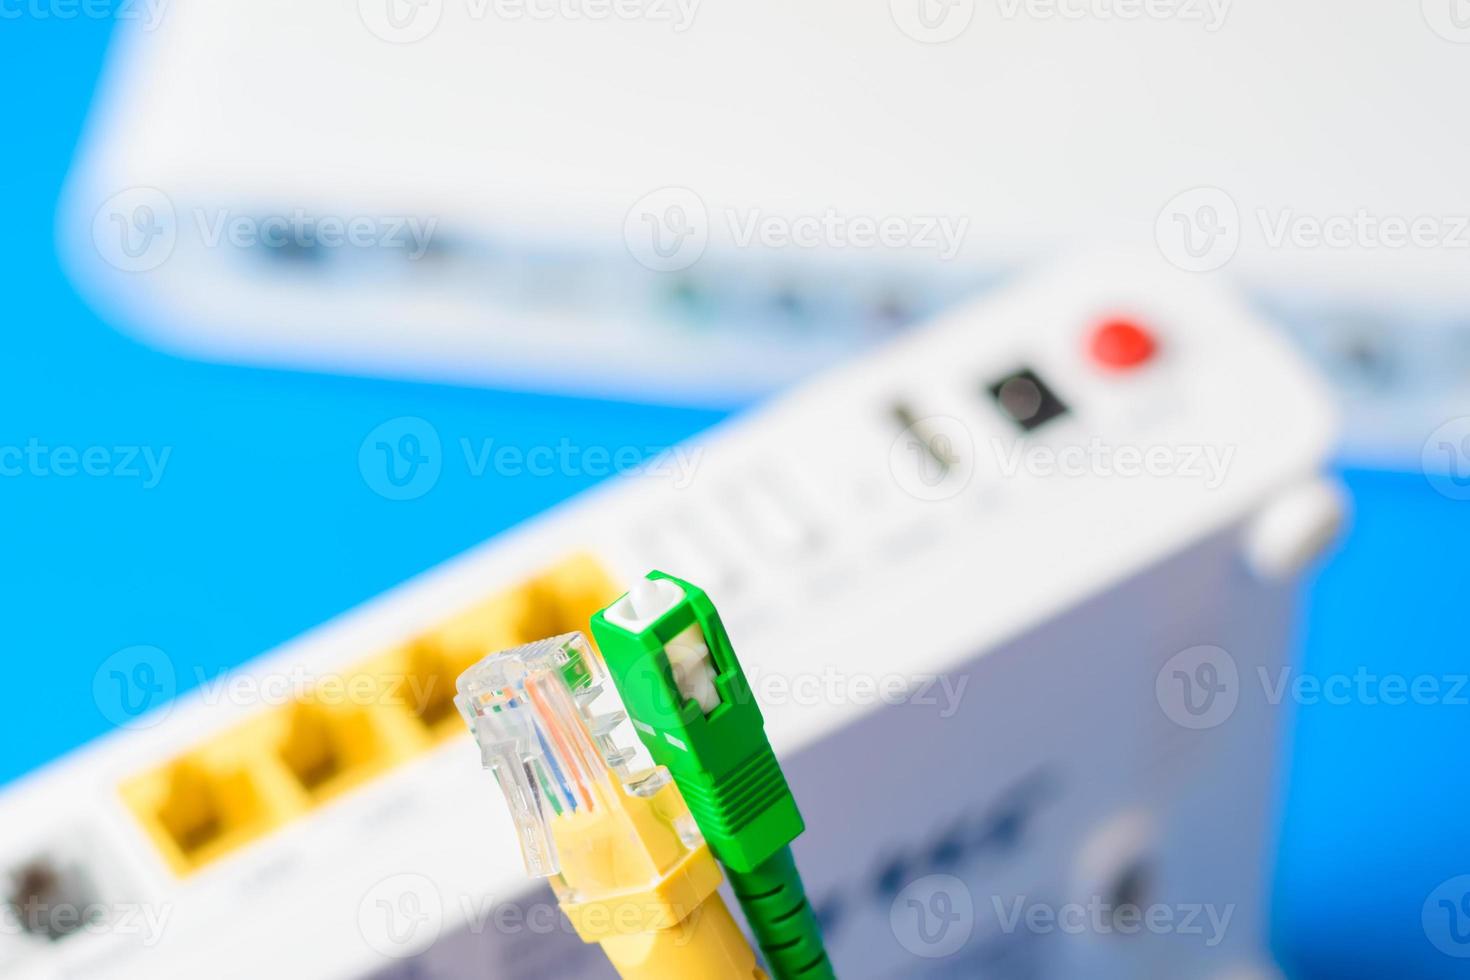 glasvezel- en netwerkkabels met draadloze internetrouter op een blauwe achtergrond foto